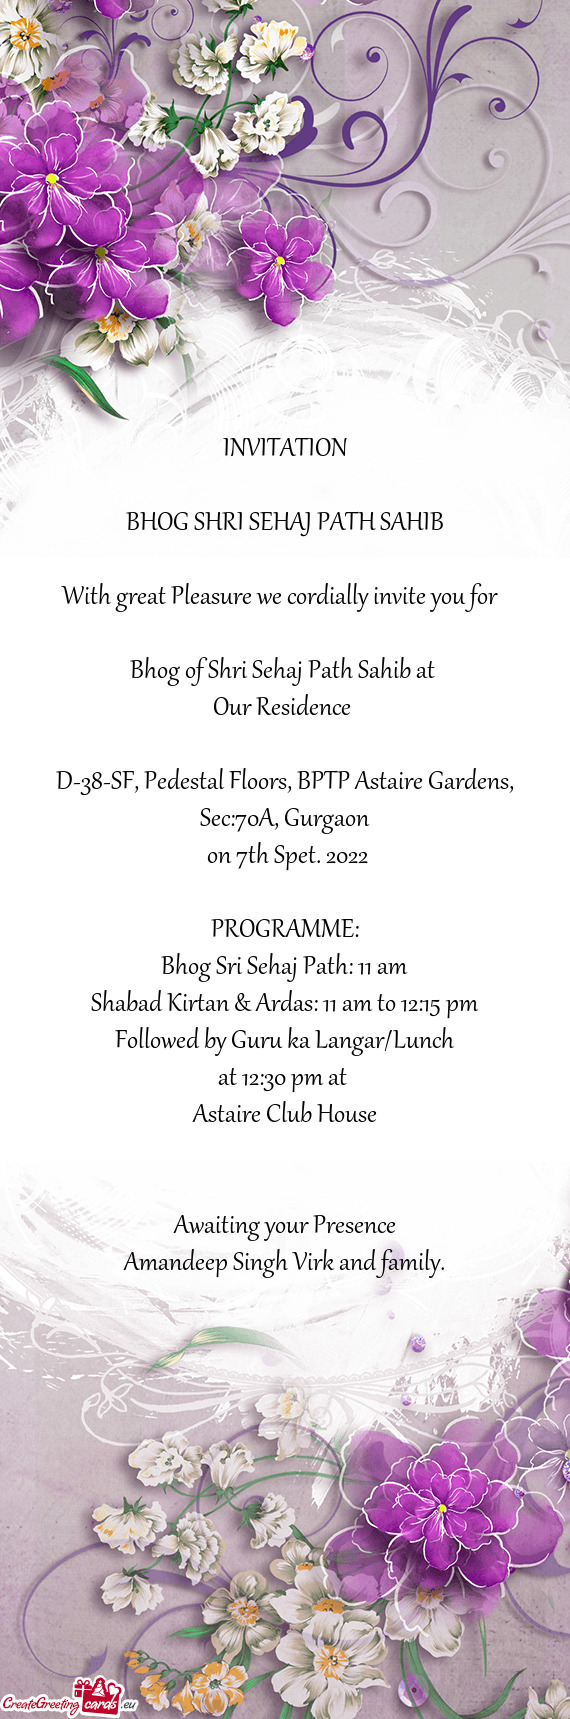 Bhog of Shri Sehaj Path Sahib at